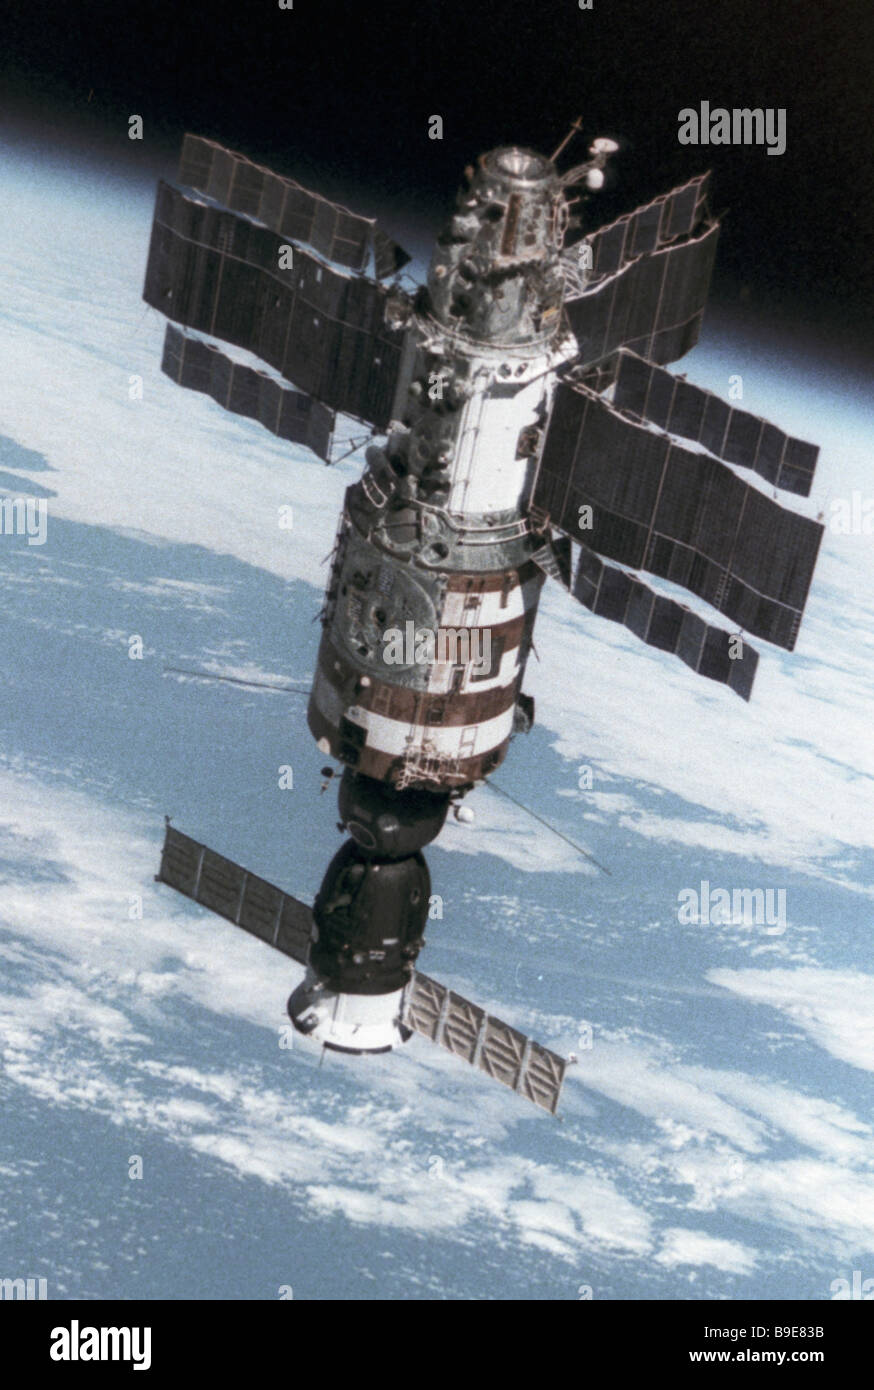 salyut-7-orbital-station-with-soyuz-14-spacecraft-B9E83B.jpg